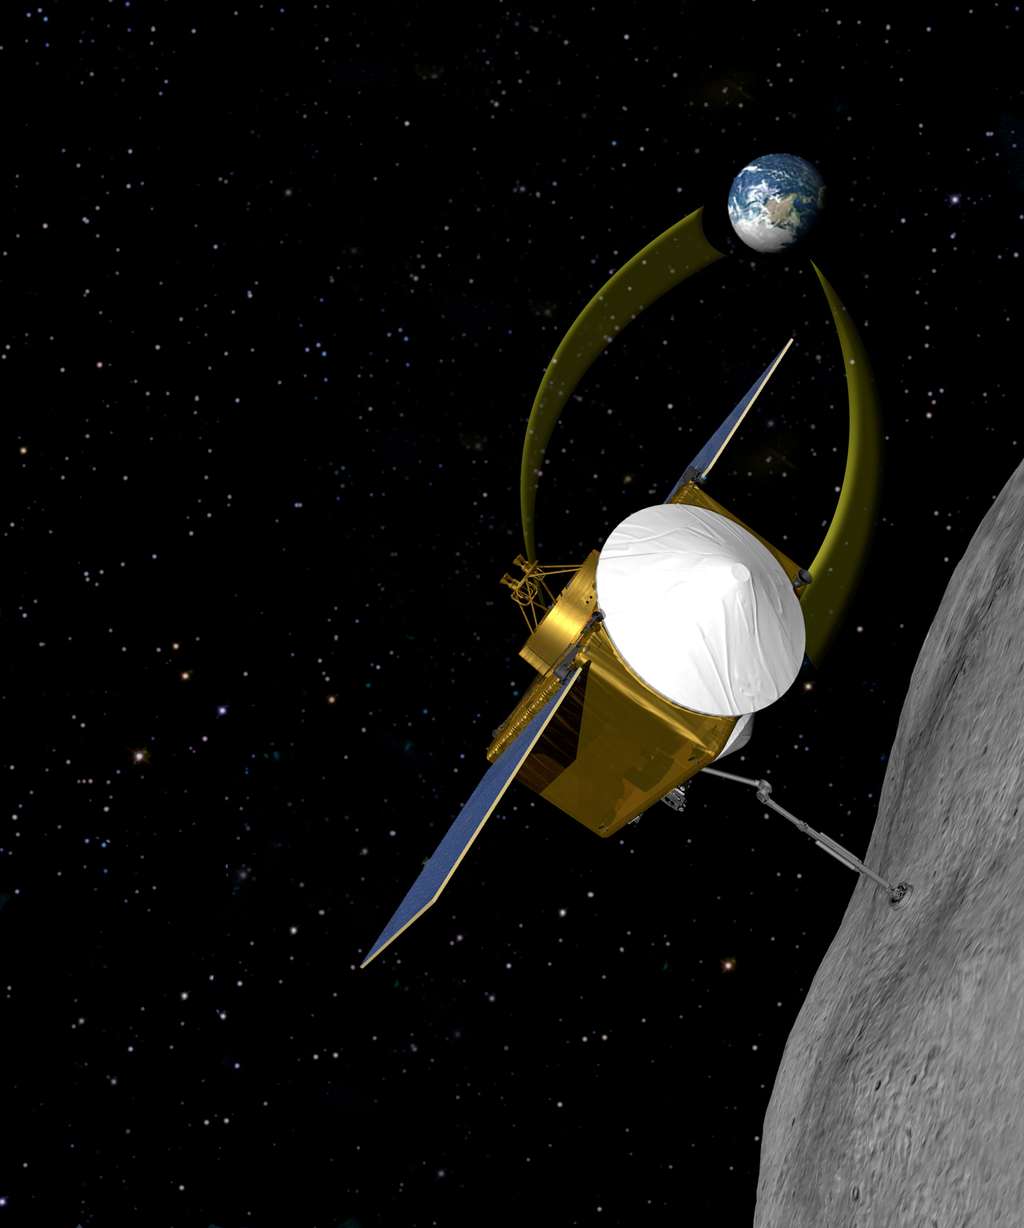  La sonde Osiris-Rex devrait récupérer de la matière sur l'astéroïde 1999 RQ36 à l'horizon 2020. © Nasa/Goddard/<em>University of Arizona</em>